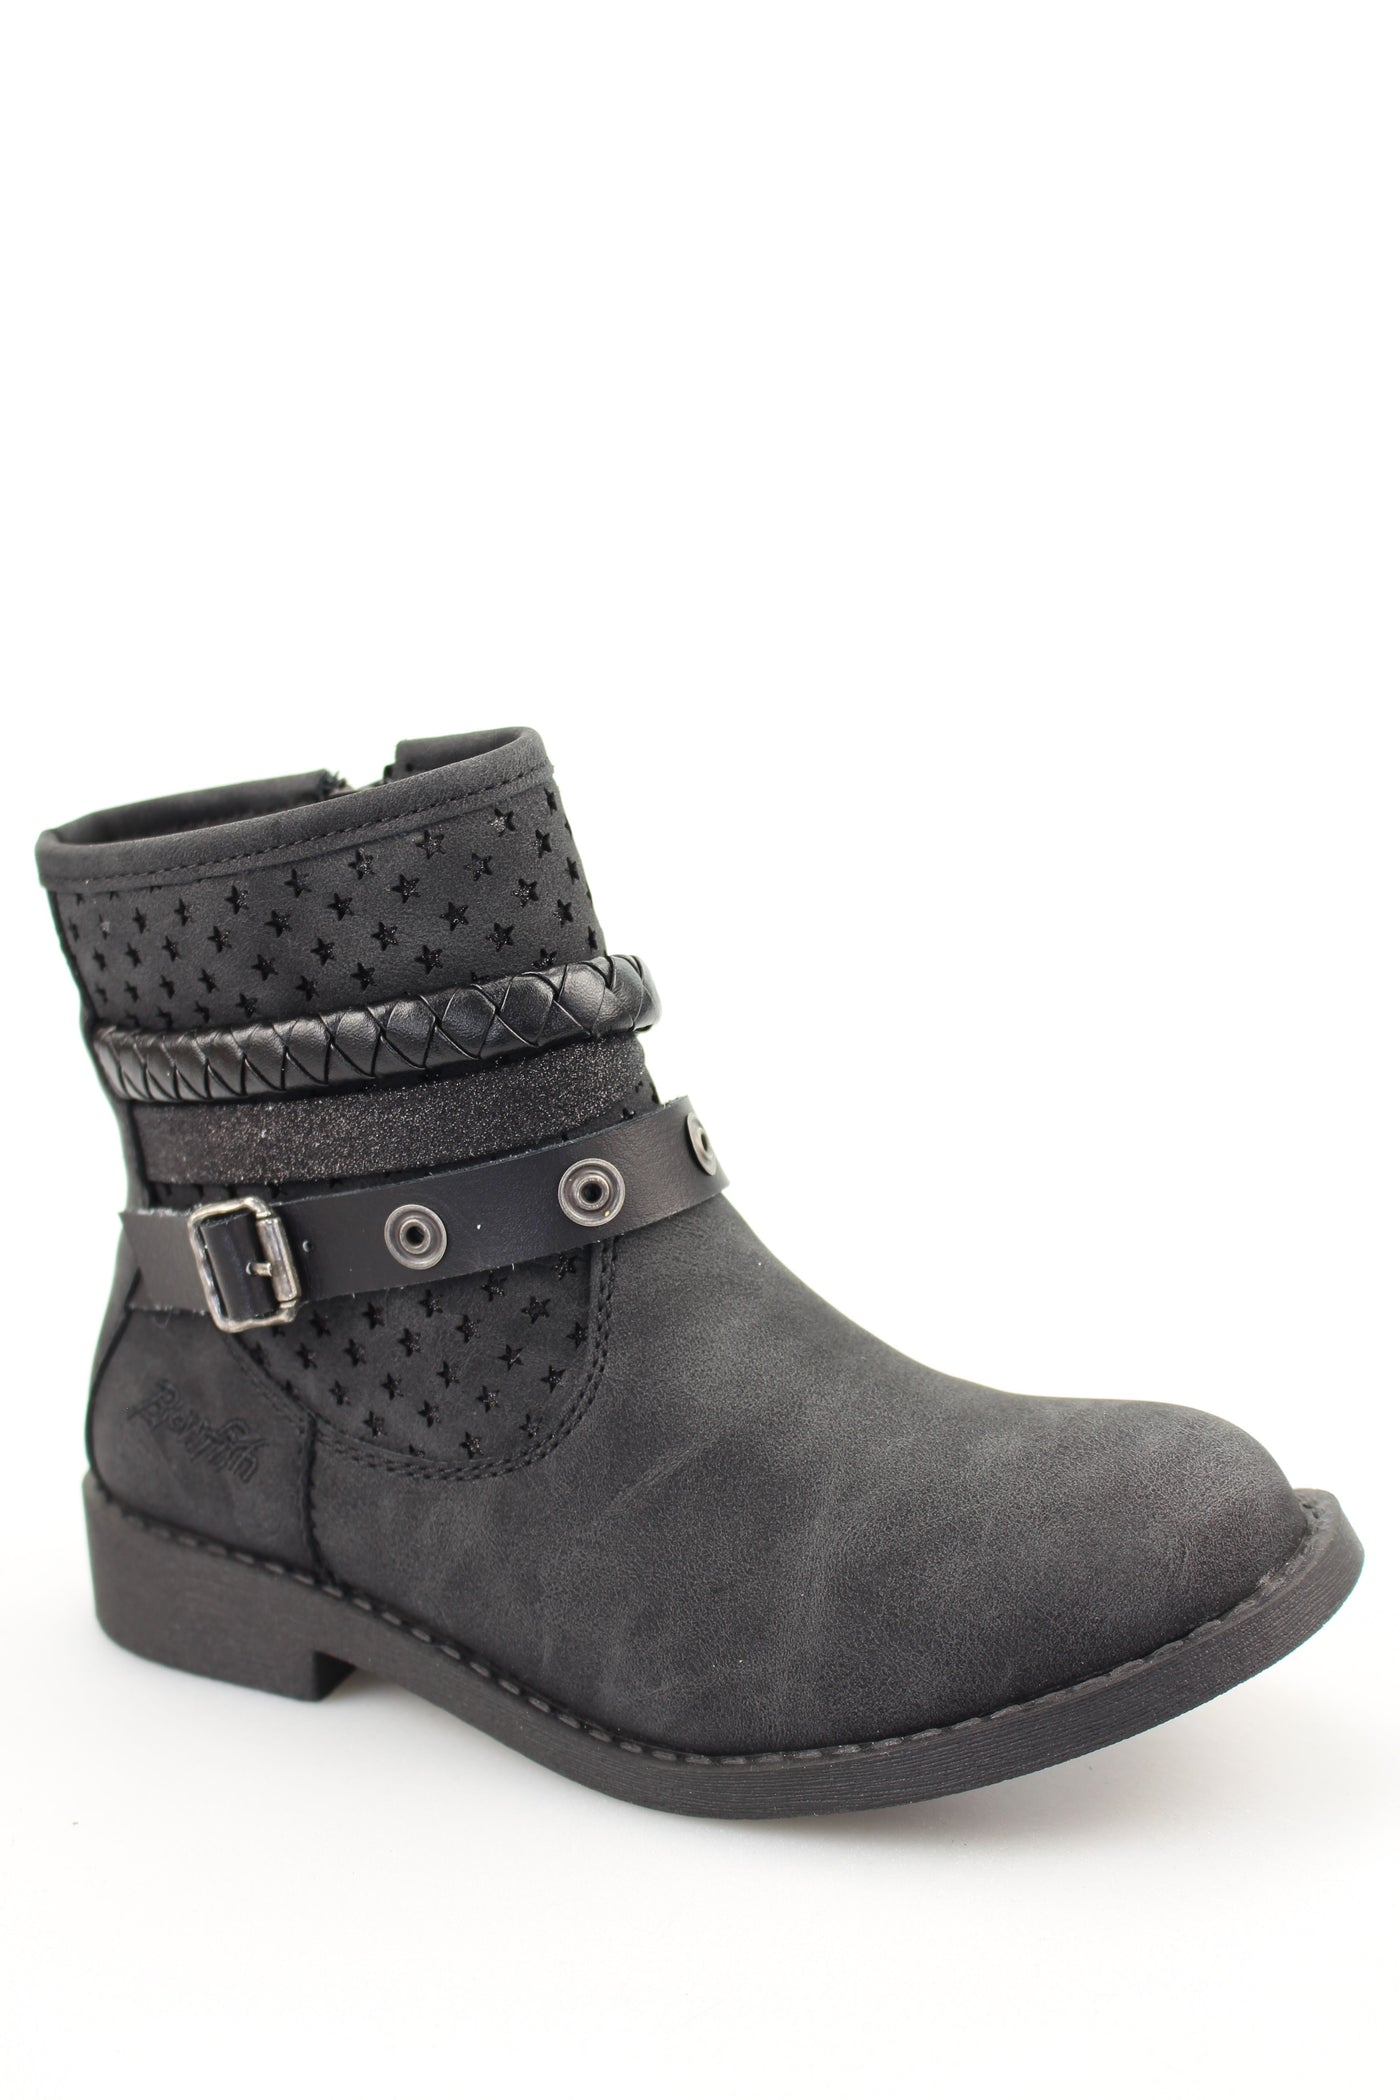 kearney black boot